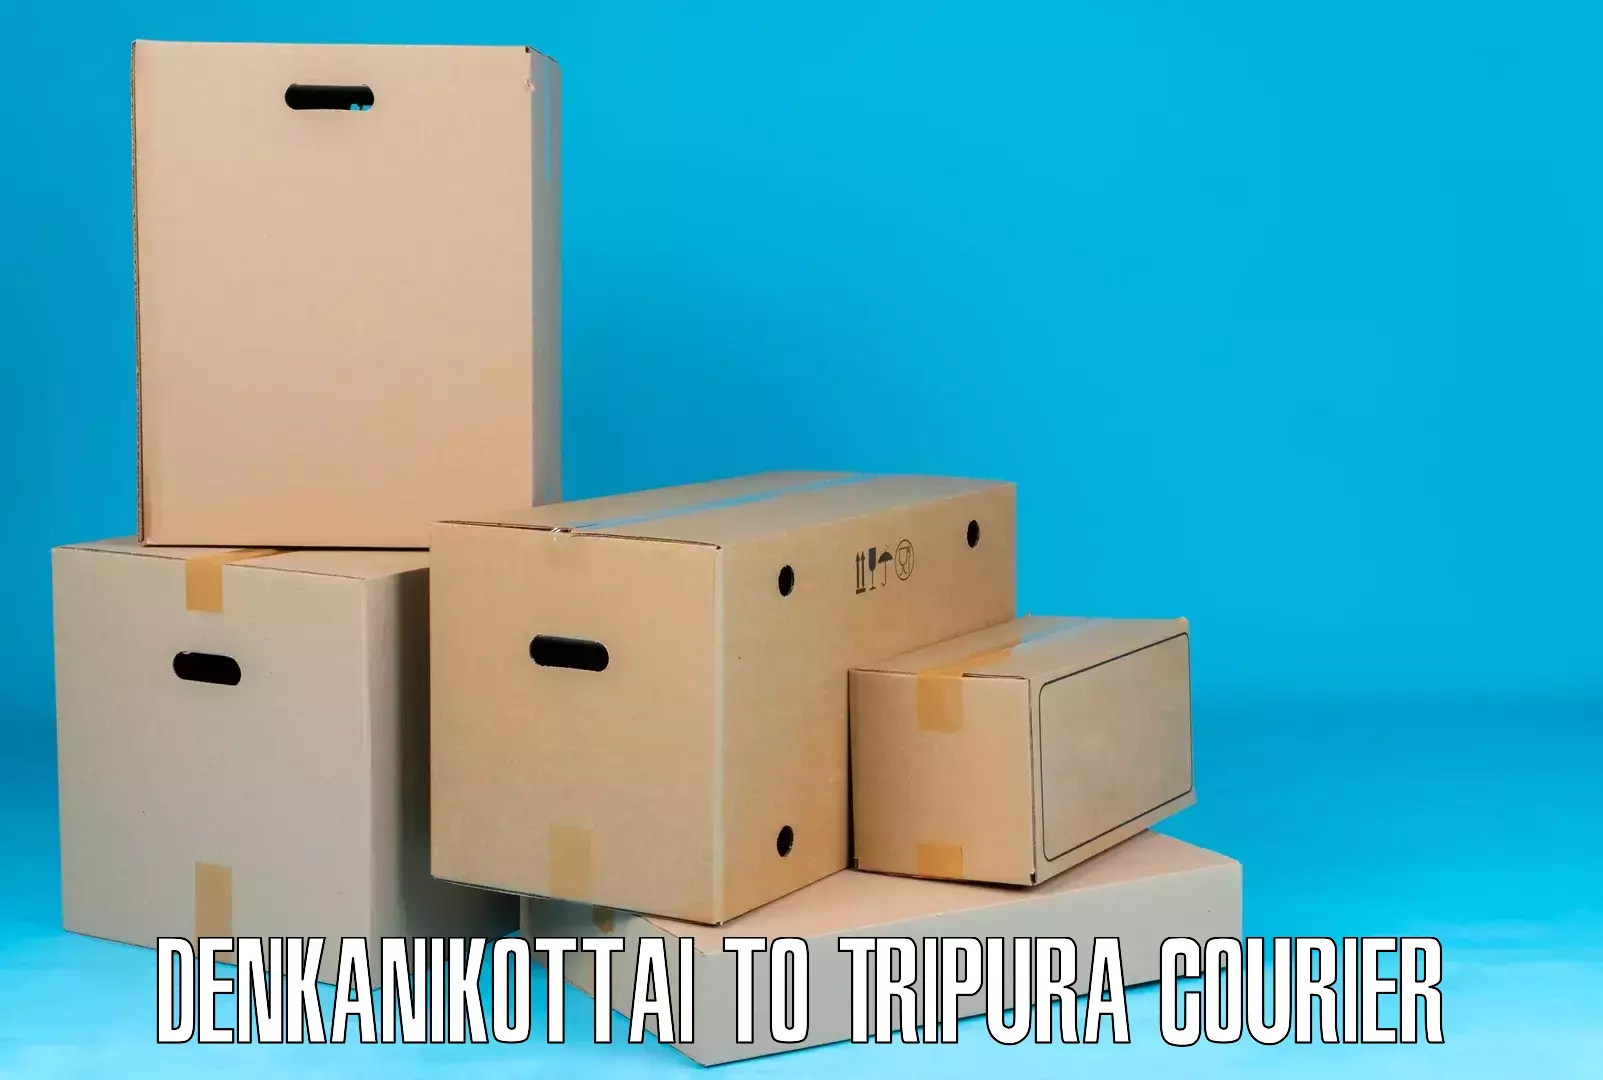 Large package courier Denkanikottai to Amarpur Gomati